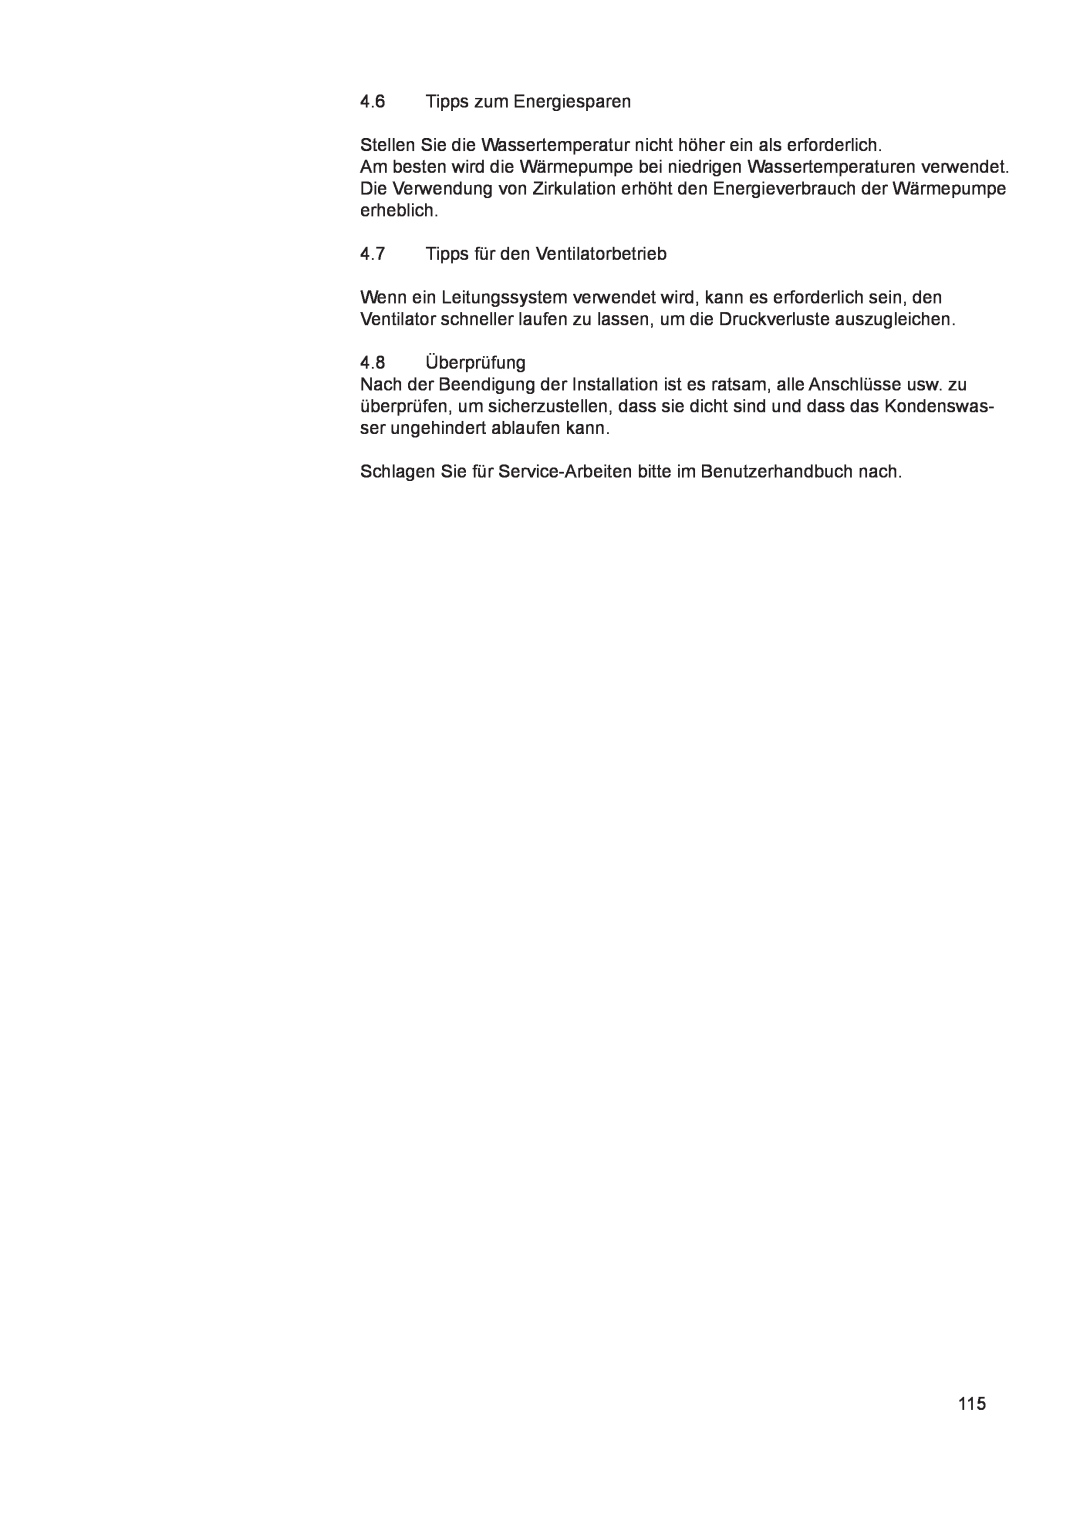 A.O. Smith 290 service manual 4.6Tipps zum Energiesparen, 4.7Tipps für den Ventilatorbetrieb, 4.8Überprüfung 